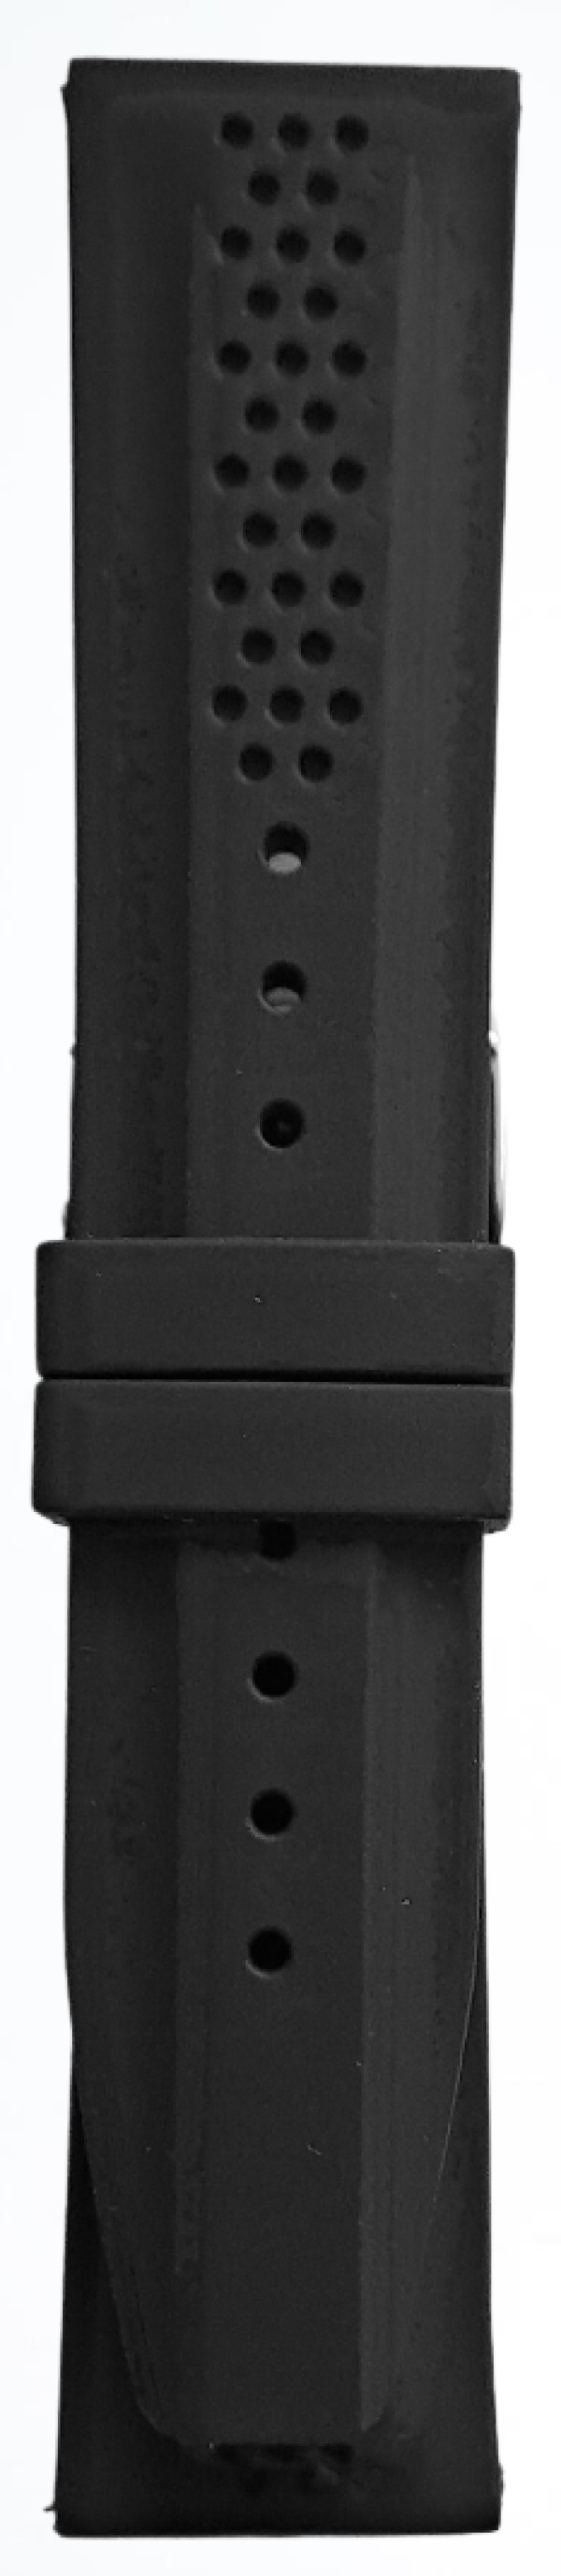 Silikonski kaiš - SK 24.11 Crna boja 24mm